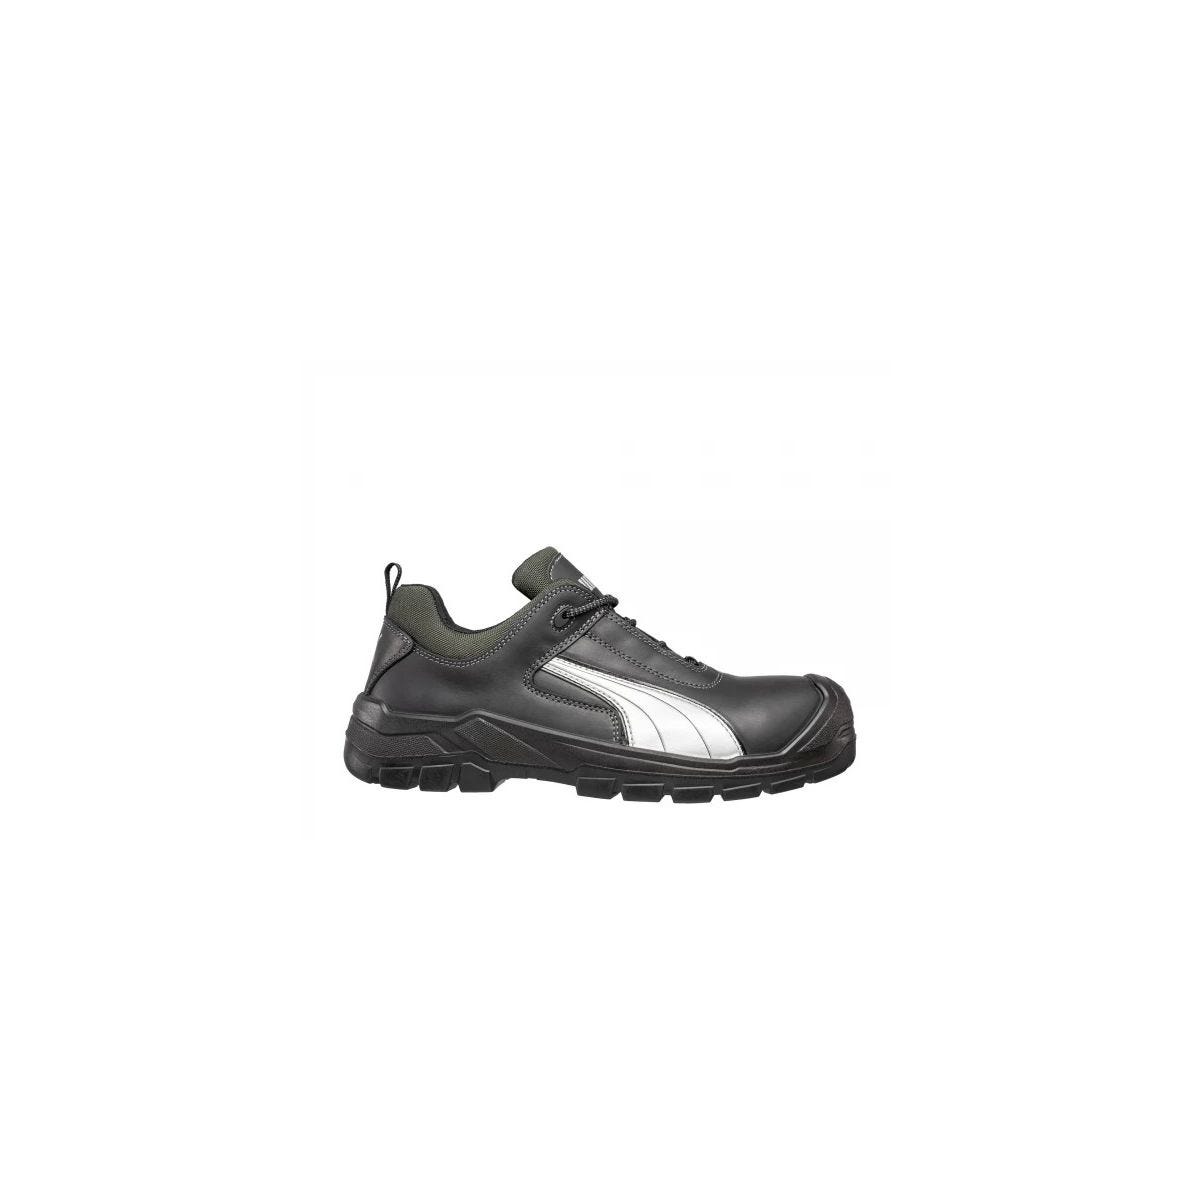 Chaussures de sécurité Cascades low S3 HRO SRC - Puma - Taille 47 0